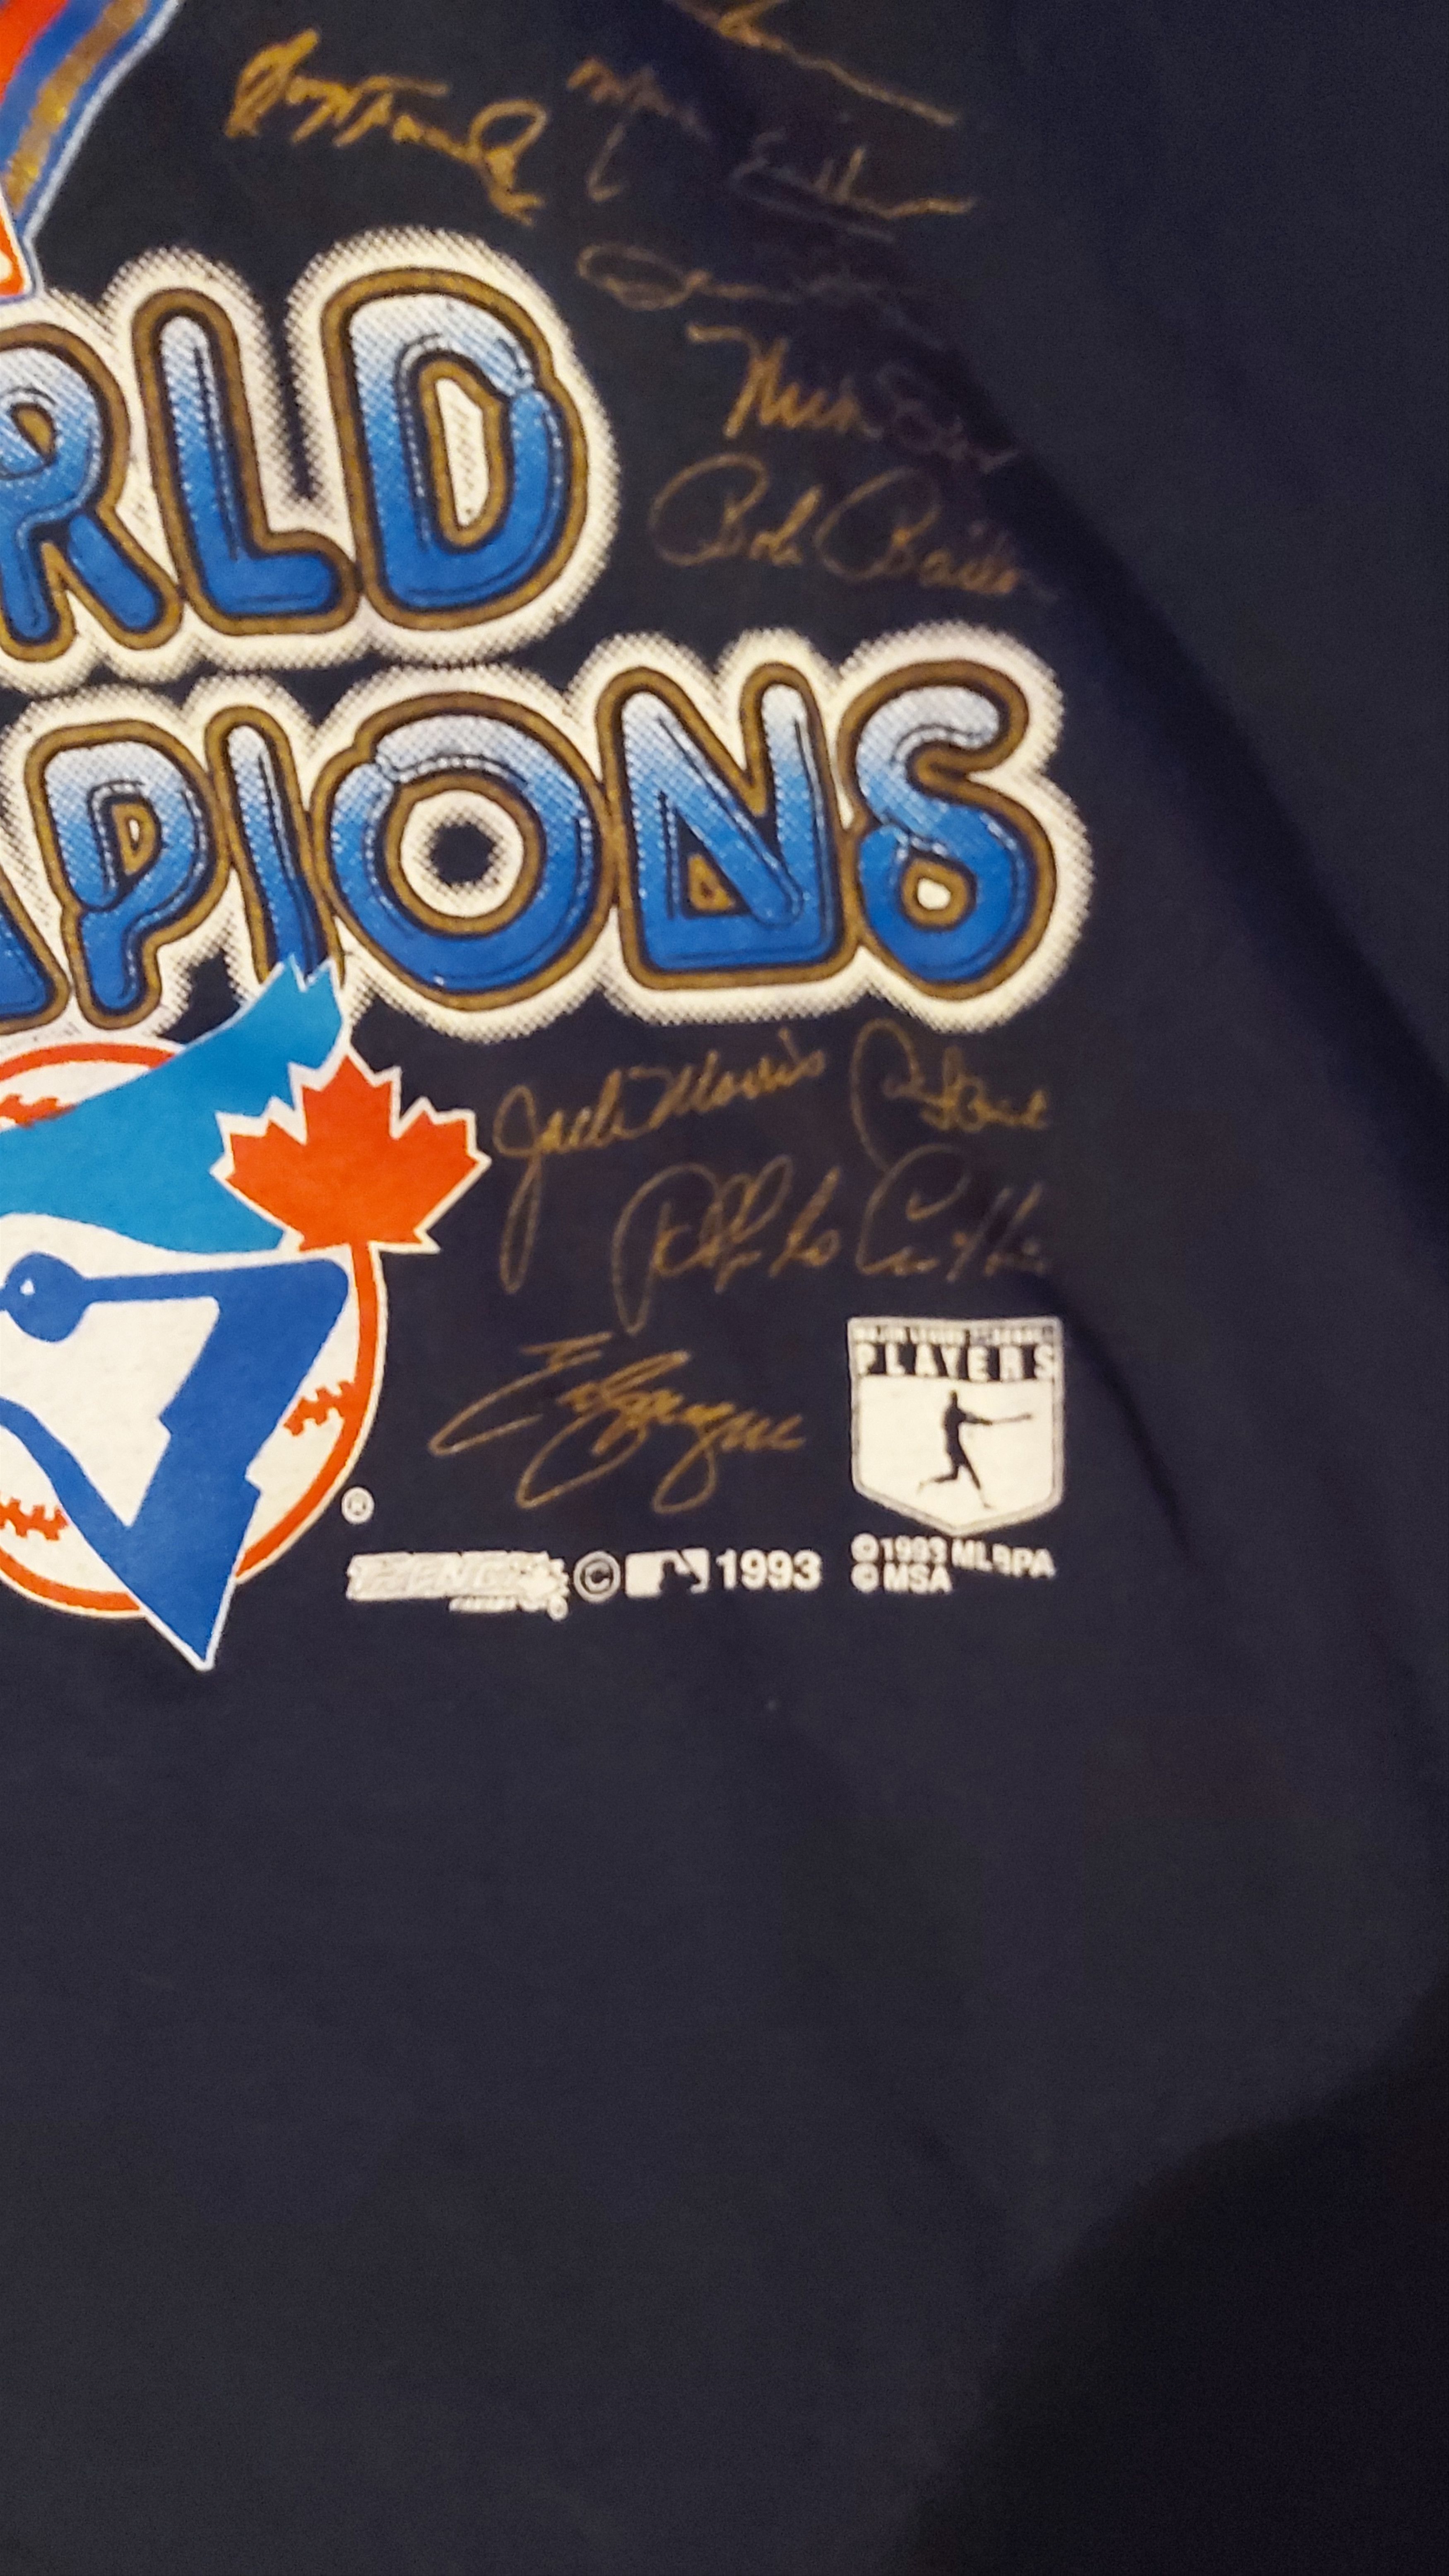 Vintage 1993 Toronto Blue Jays World Champs signature shirt. Size US XL / EU 56 / 4 - 2 Preview